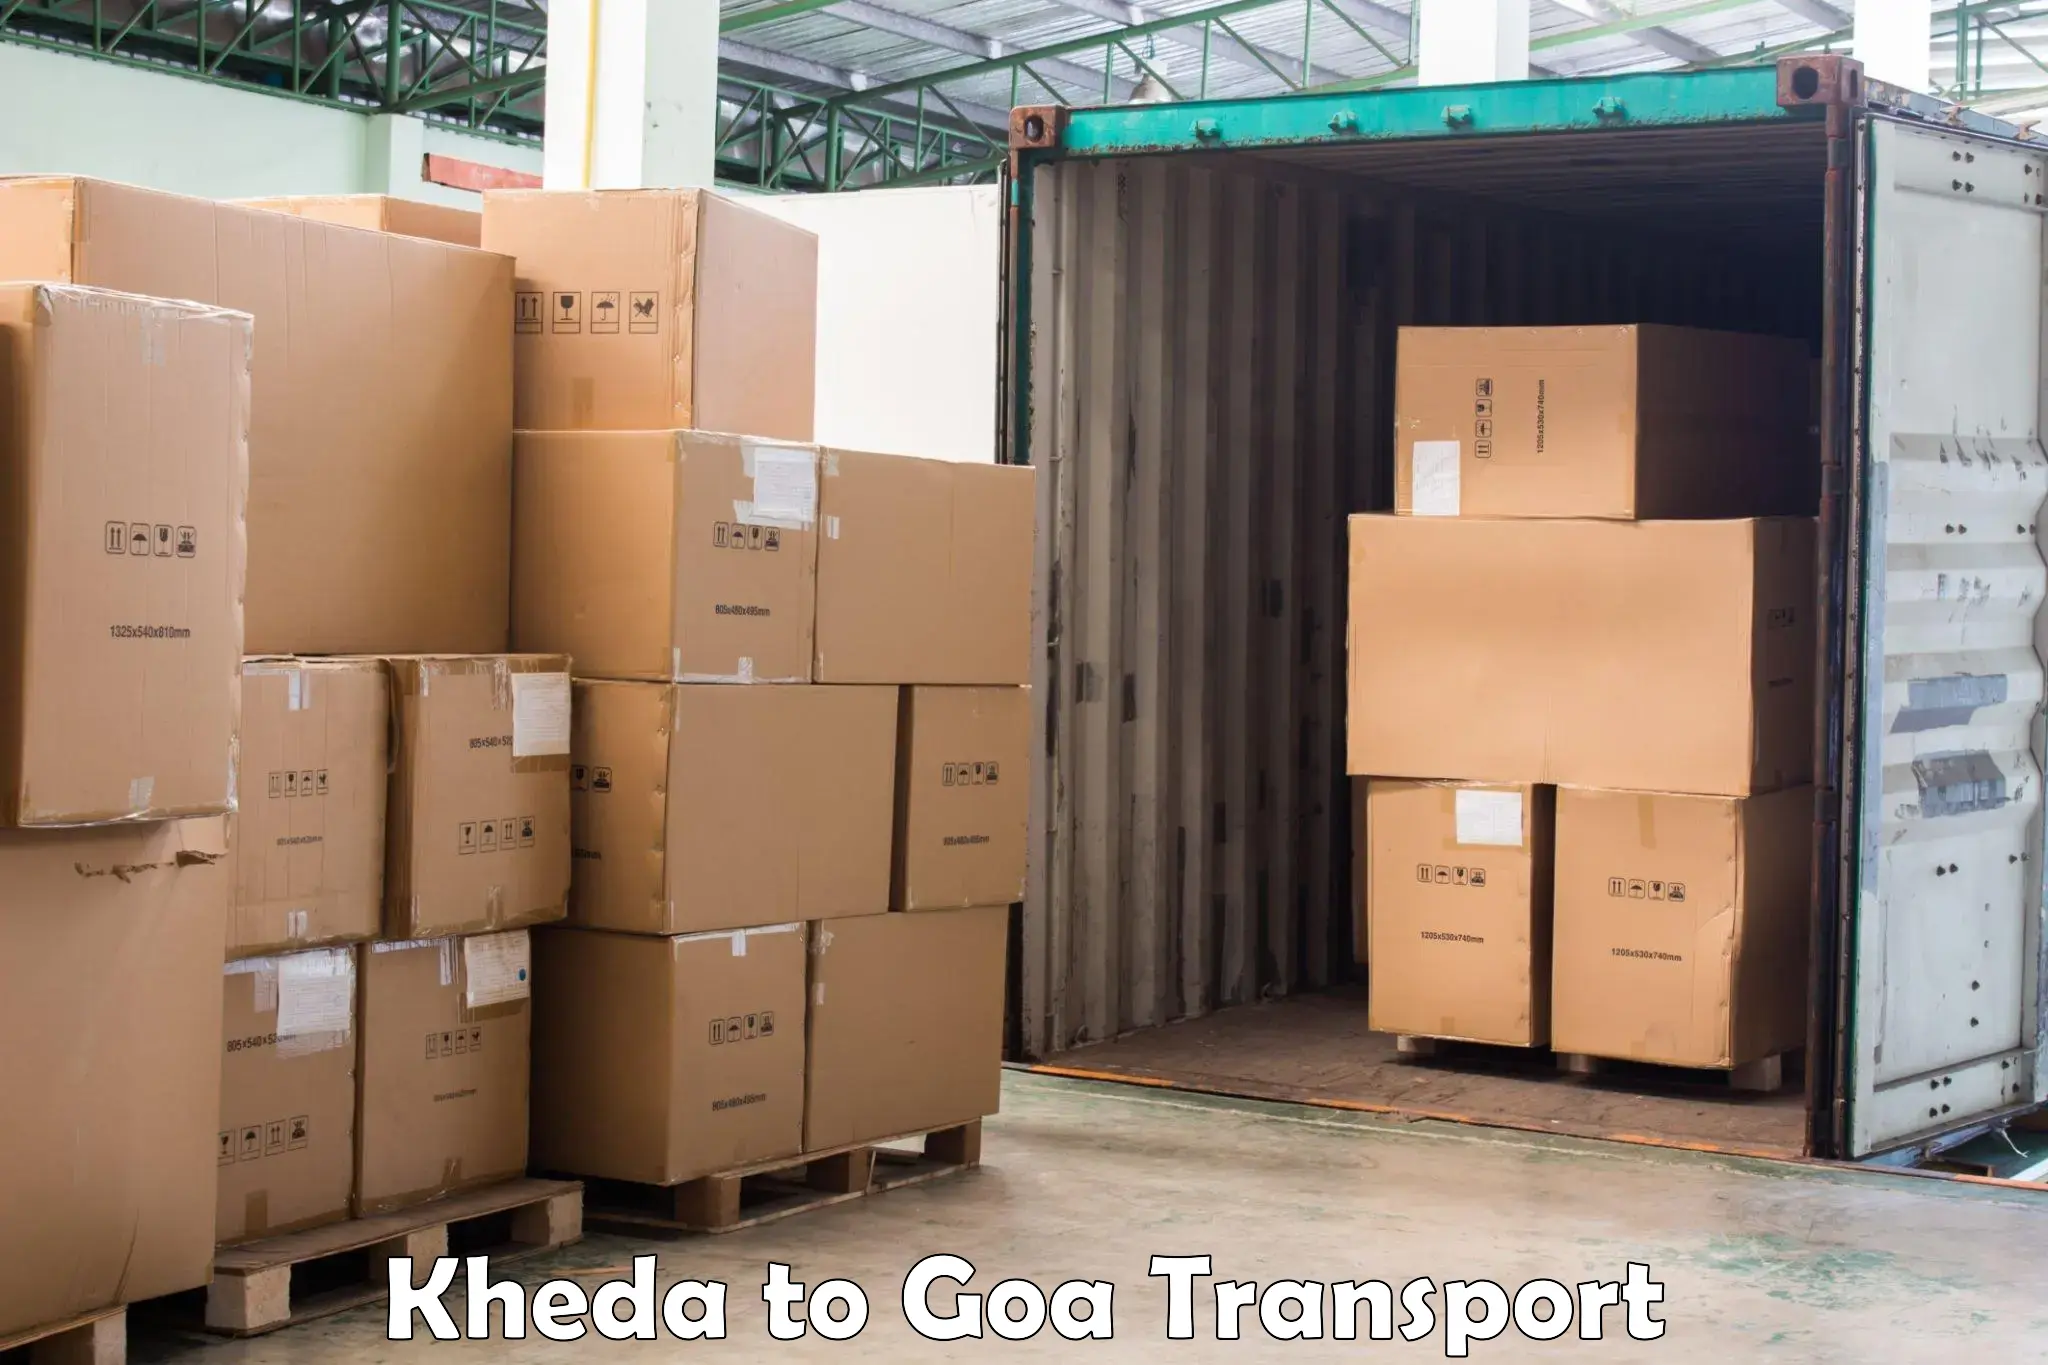 Road transport online services Kheda to Bardez